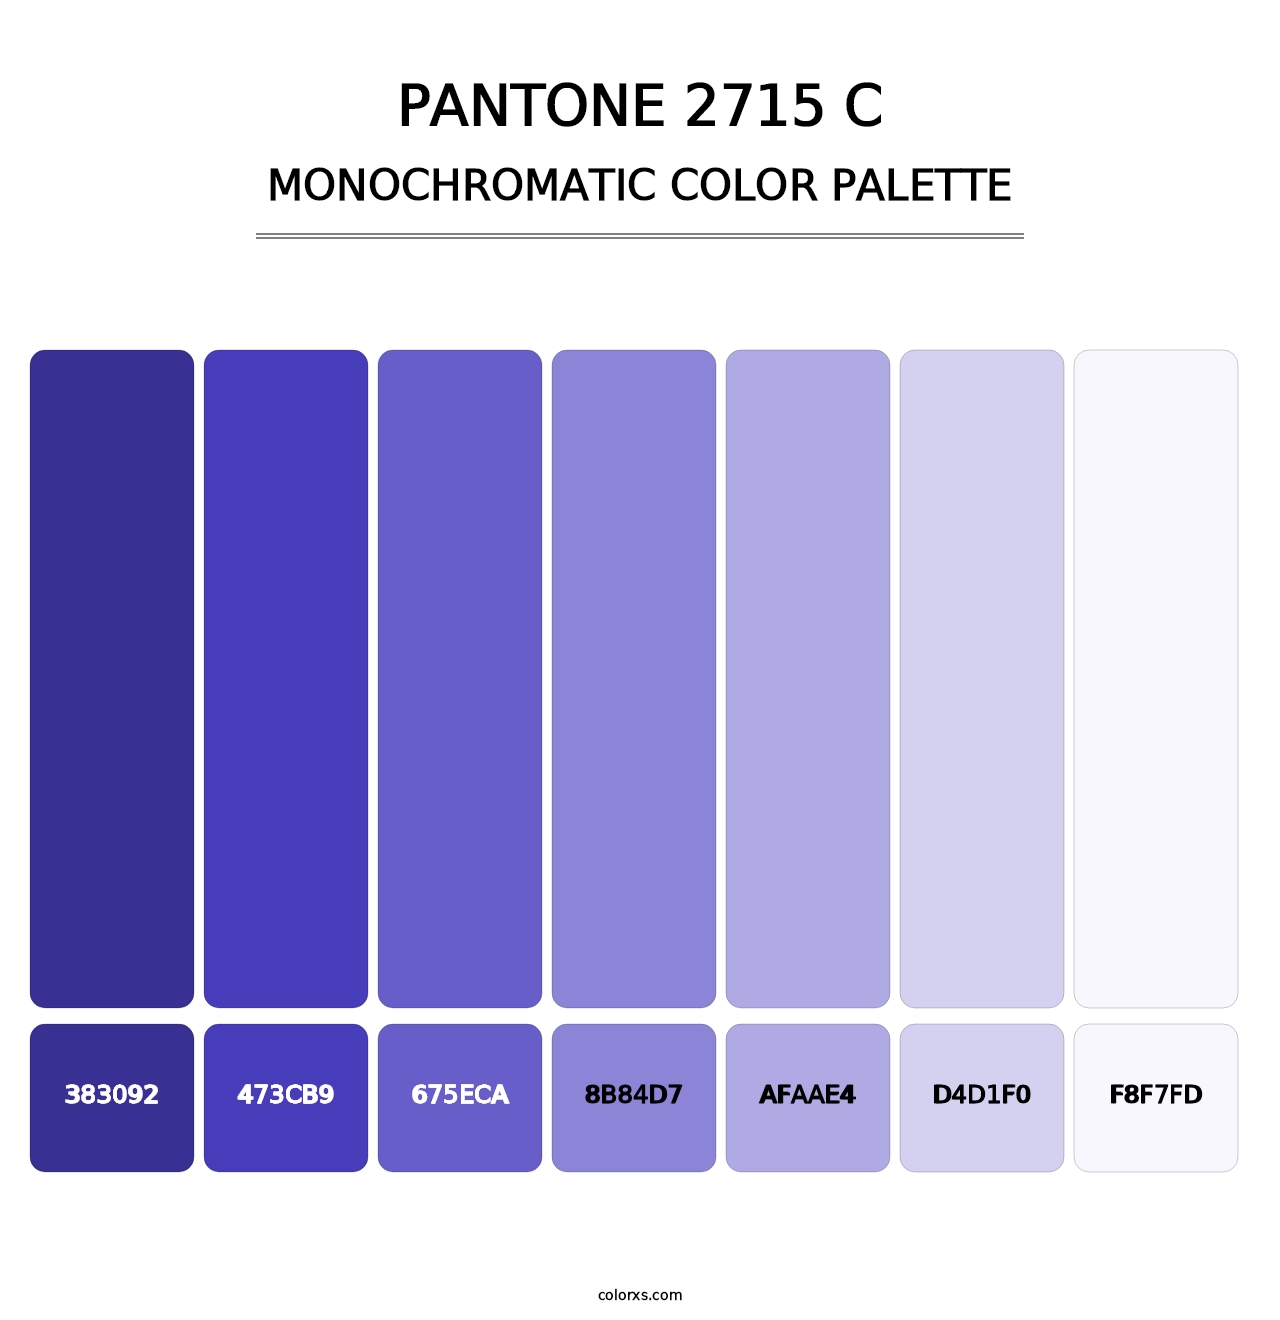 PANTONE 2715 C - Monochromatic Color Palette